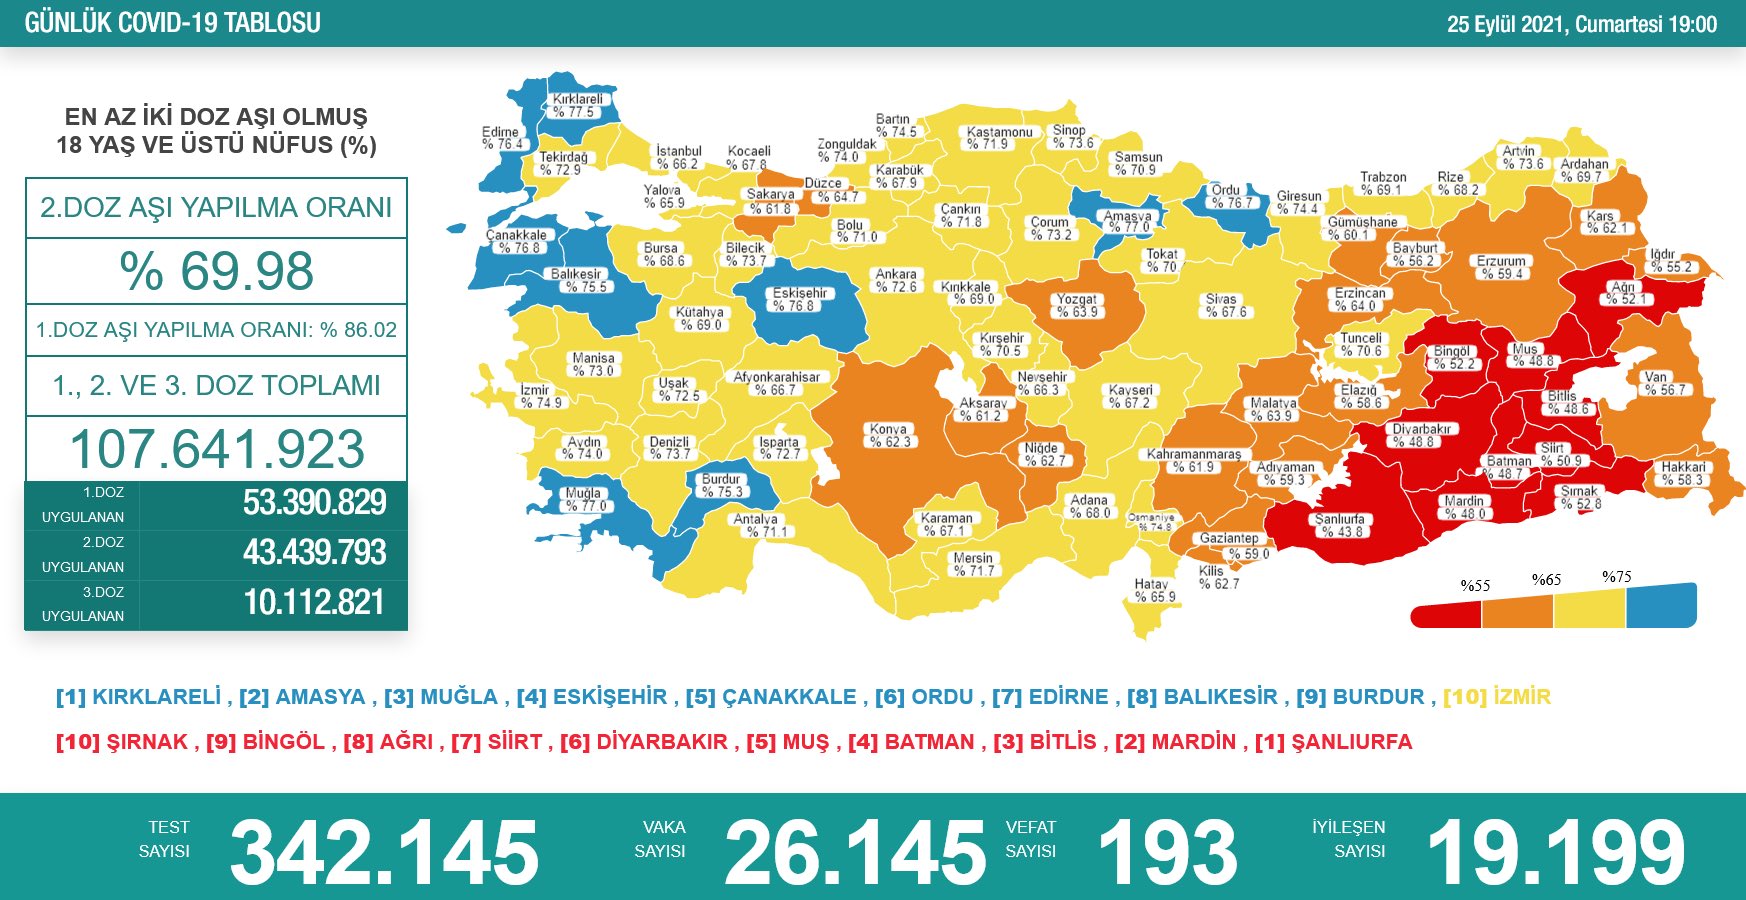 25 Eylül 2021 Türkiye Koronavirüs Tablosu Açıkladı